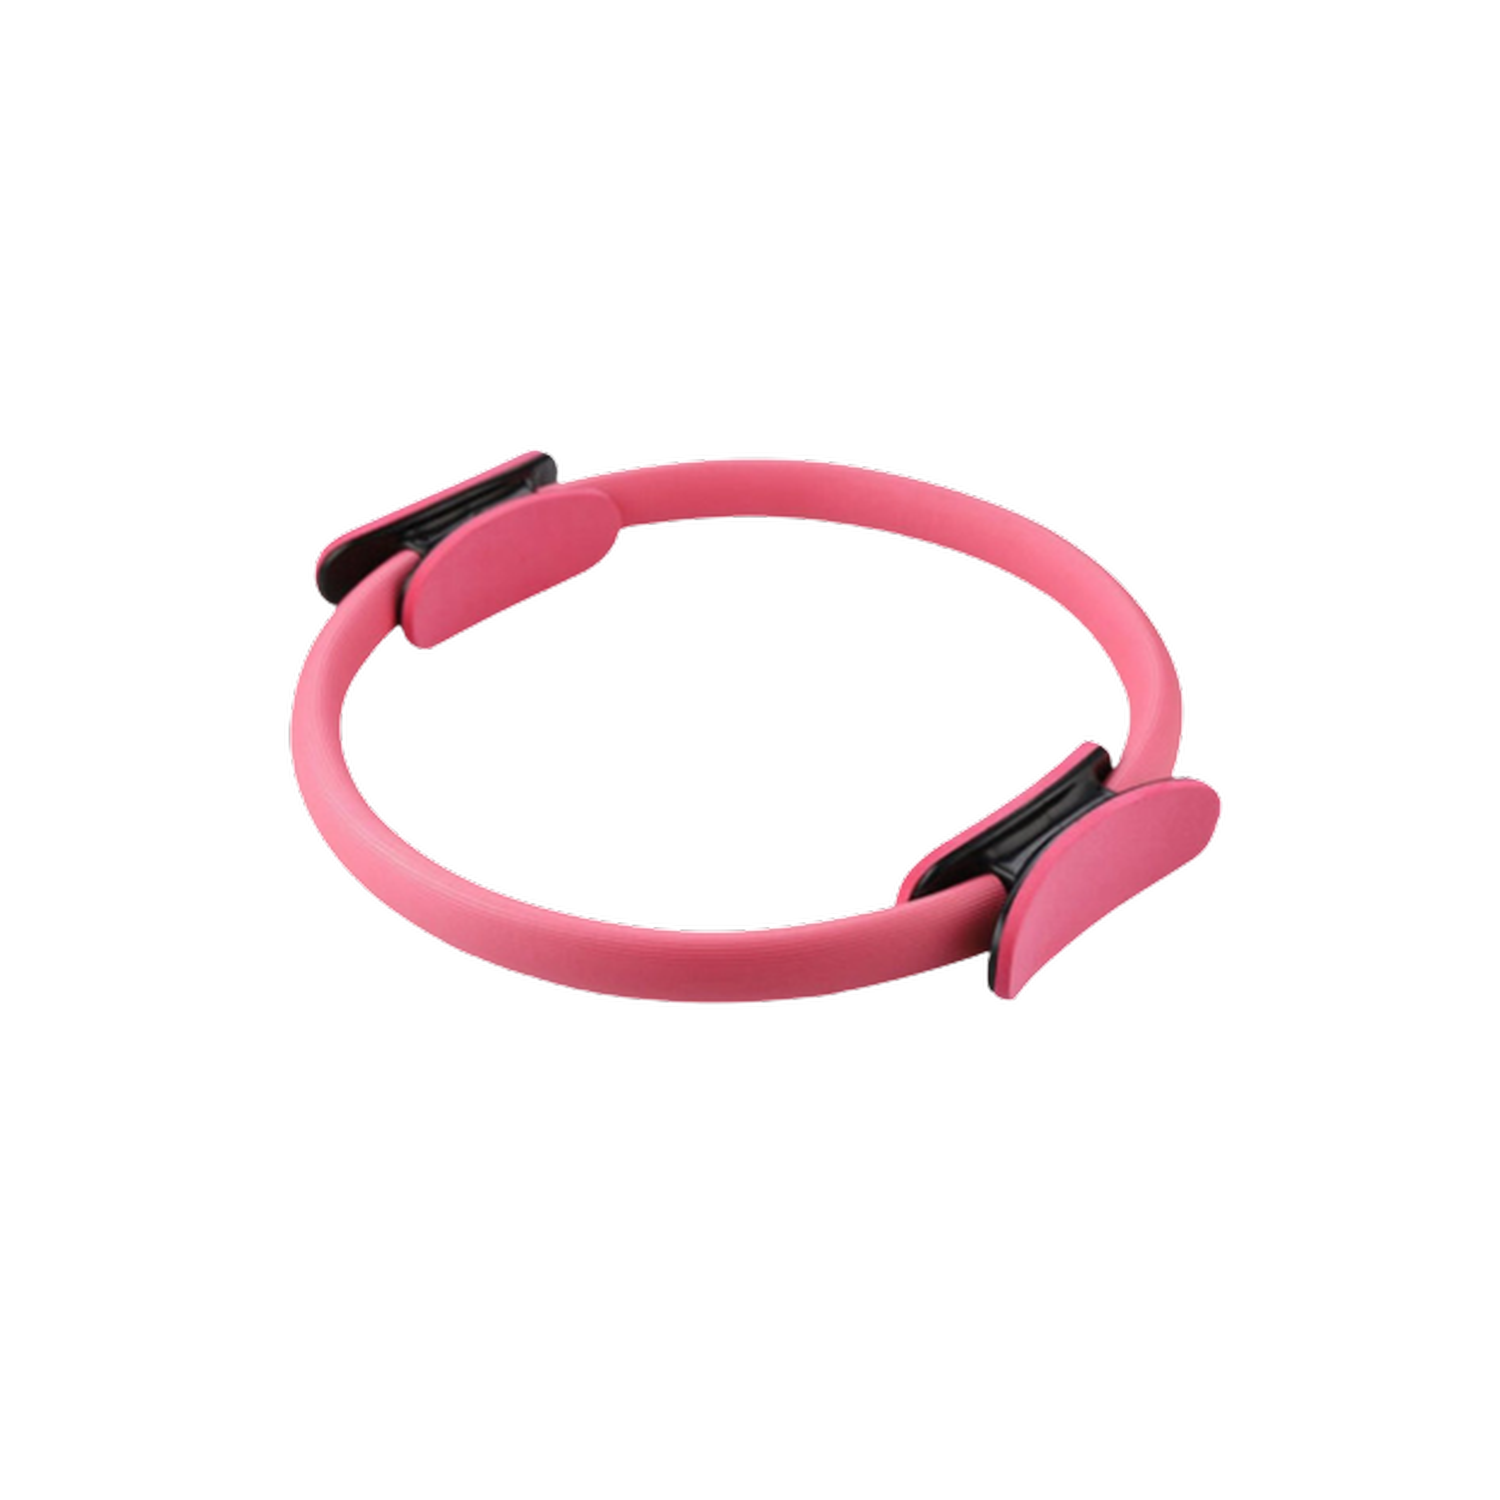 Тренажер-кольцо Rabizy для пилатеса 37 см розовый - фото 1